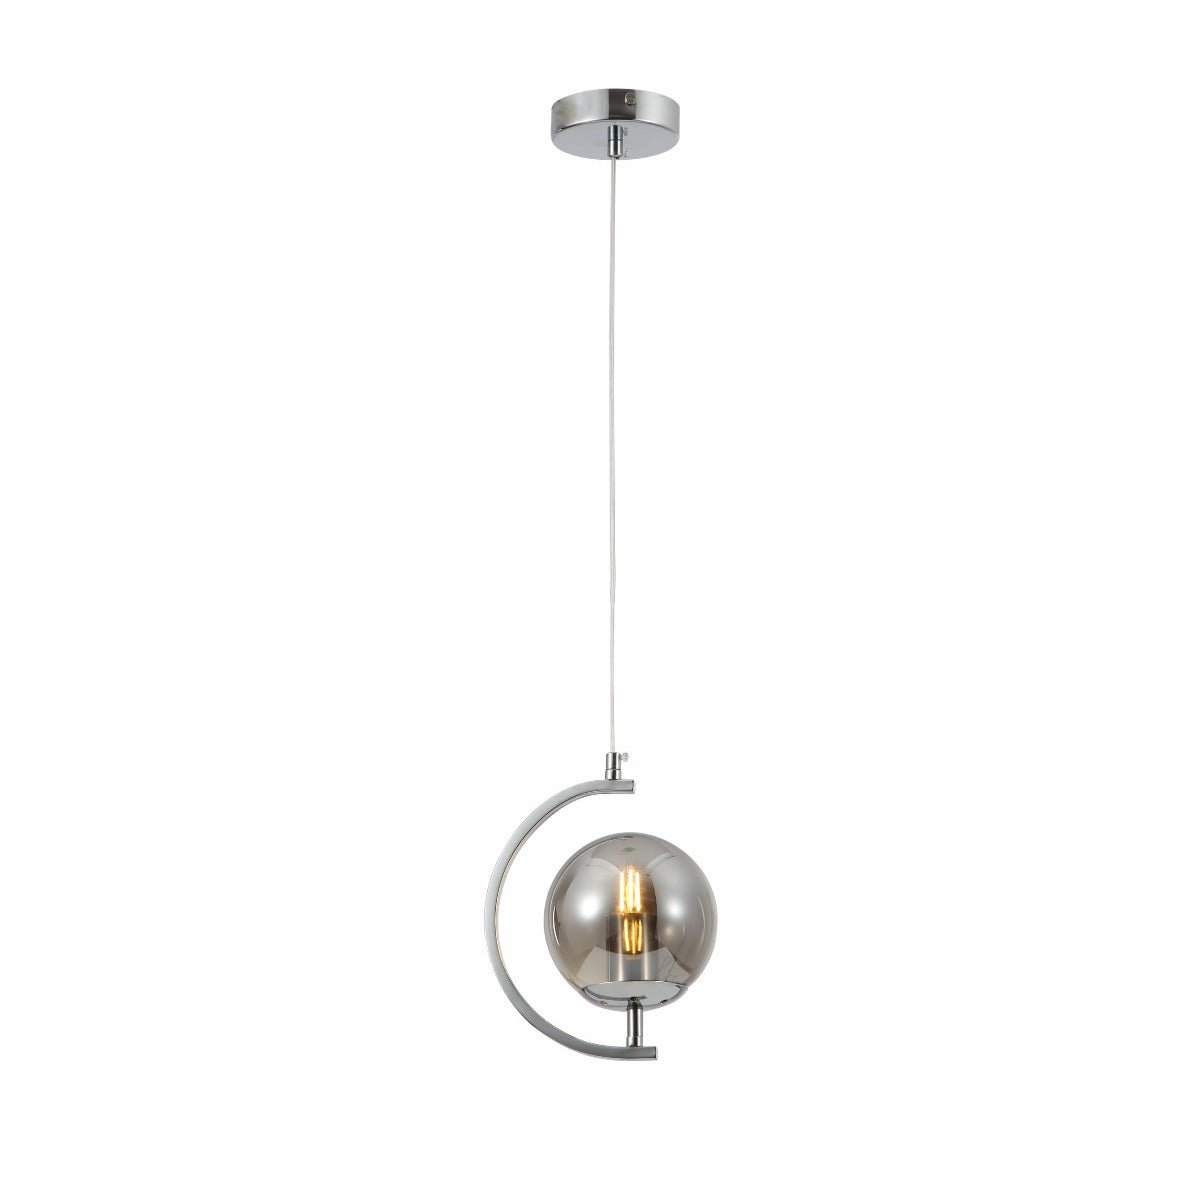 Main image of Smoky Globe Glass Crescent Chrome Metal Modern Ceiling Pendant Light E27 | TEKLED 159-17798